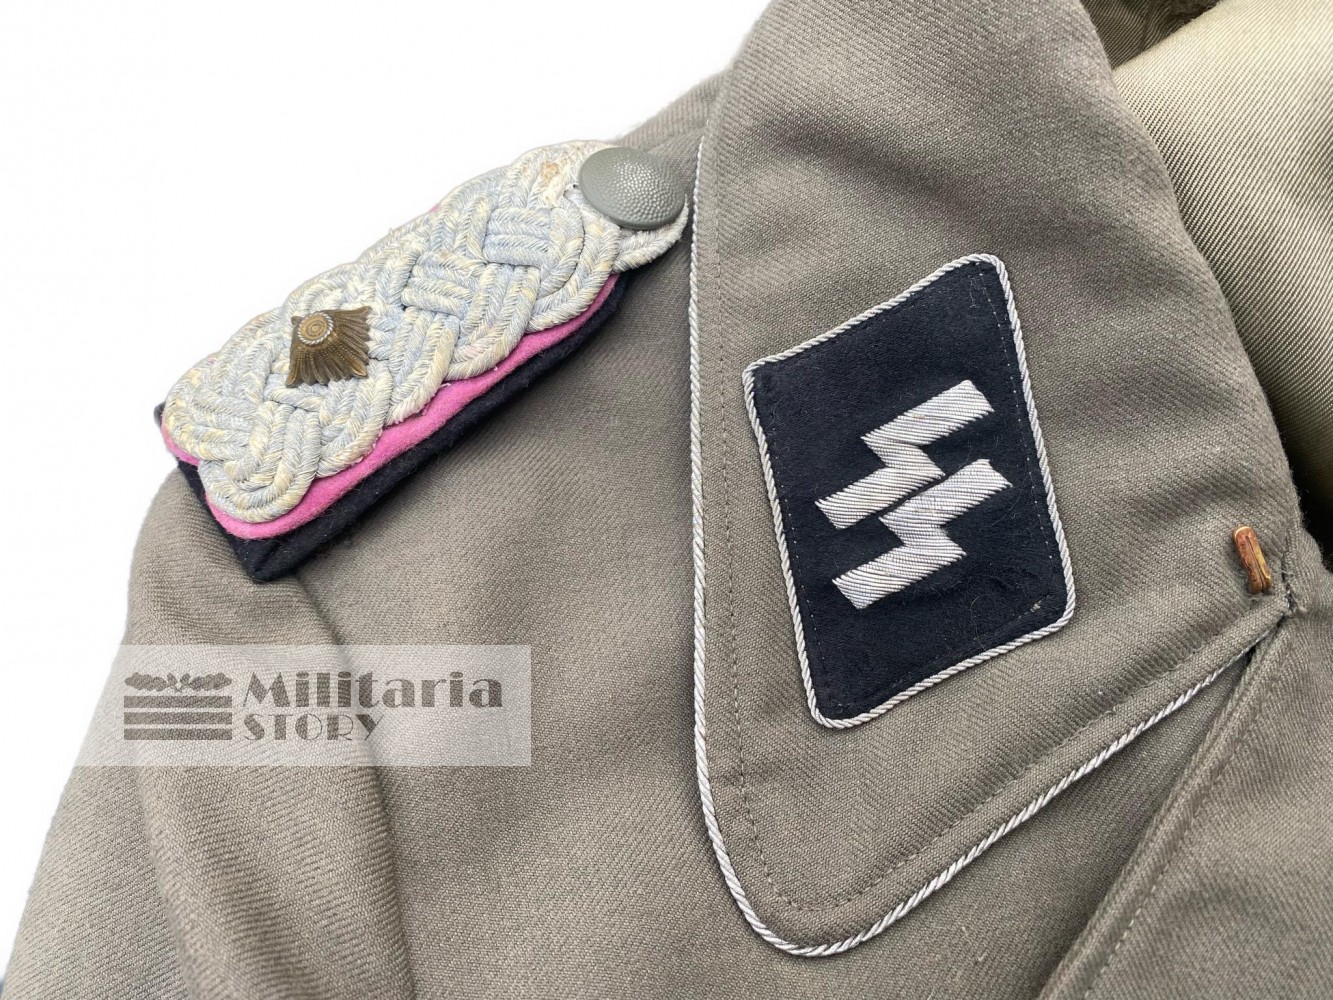 Waffen SS Officer wrap Stug - Waffen SS Officer wrap Stug: pre-war German Uniforms